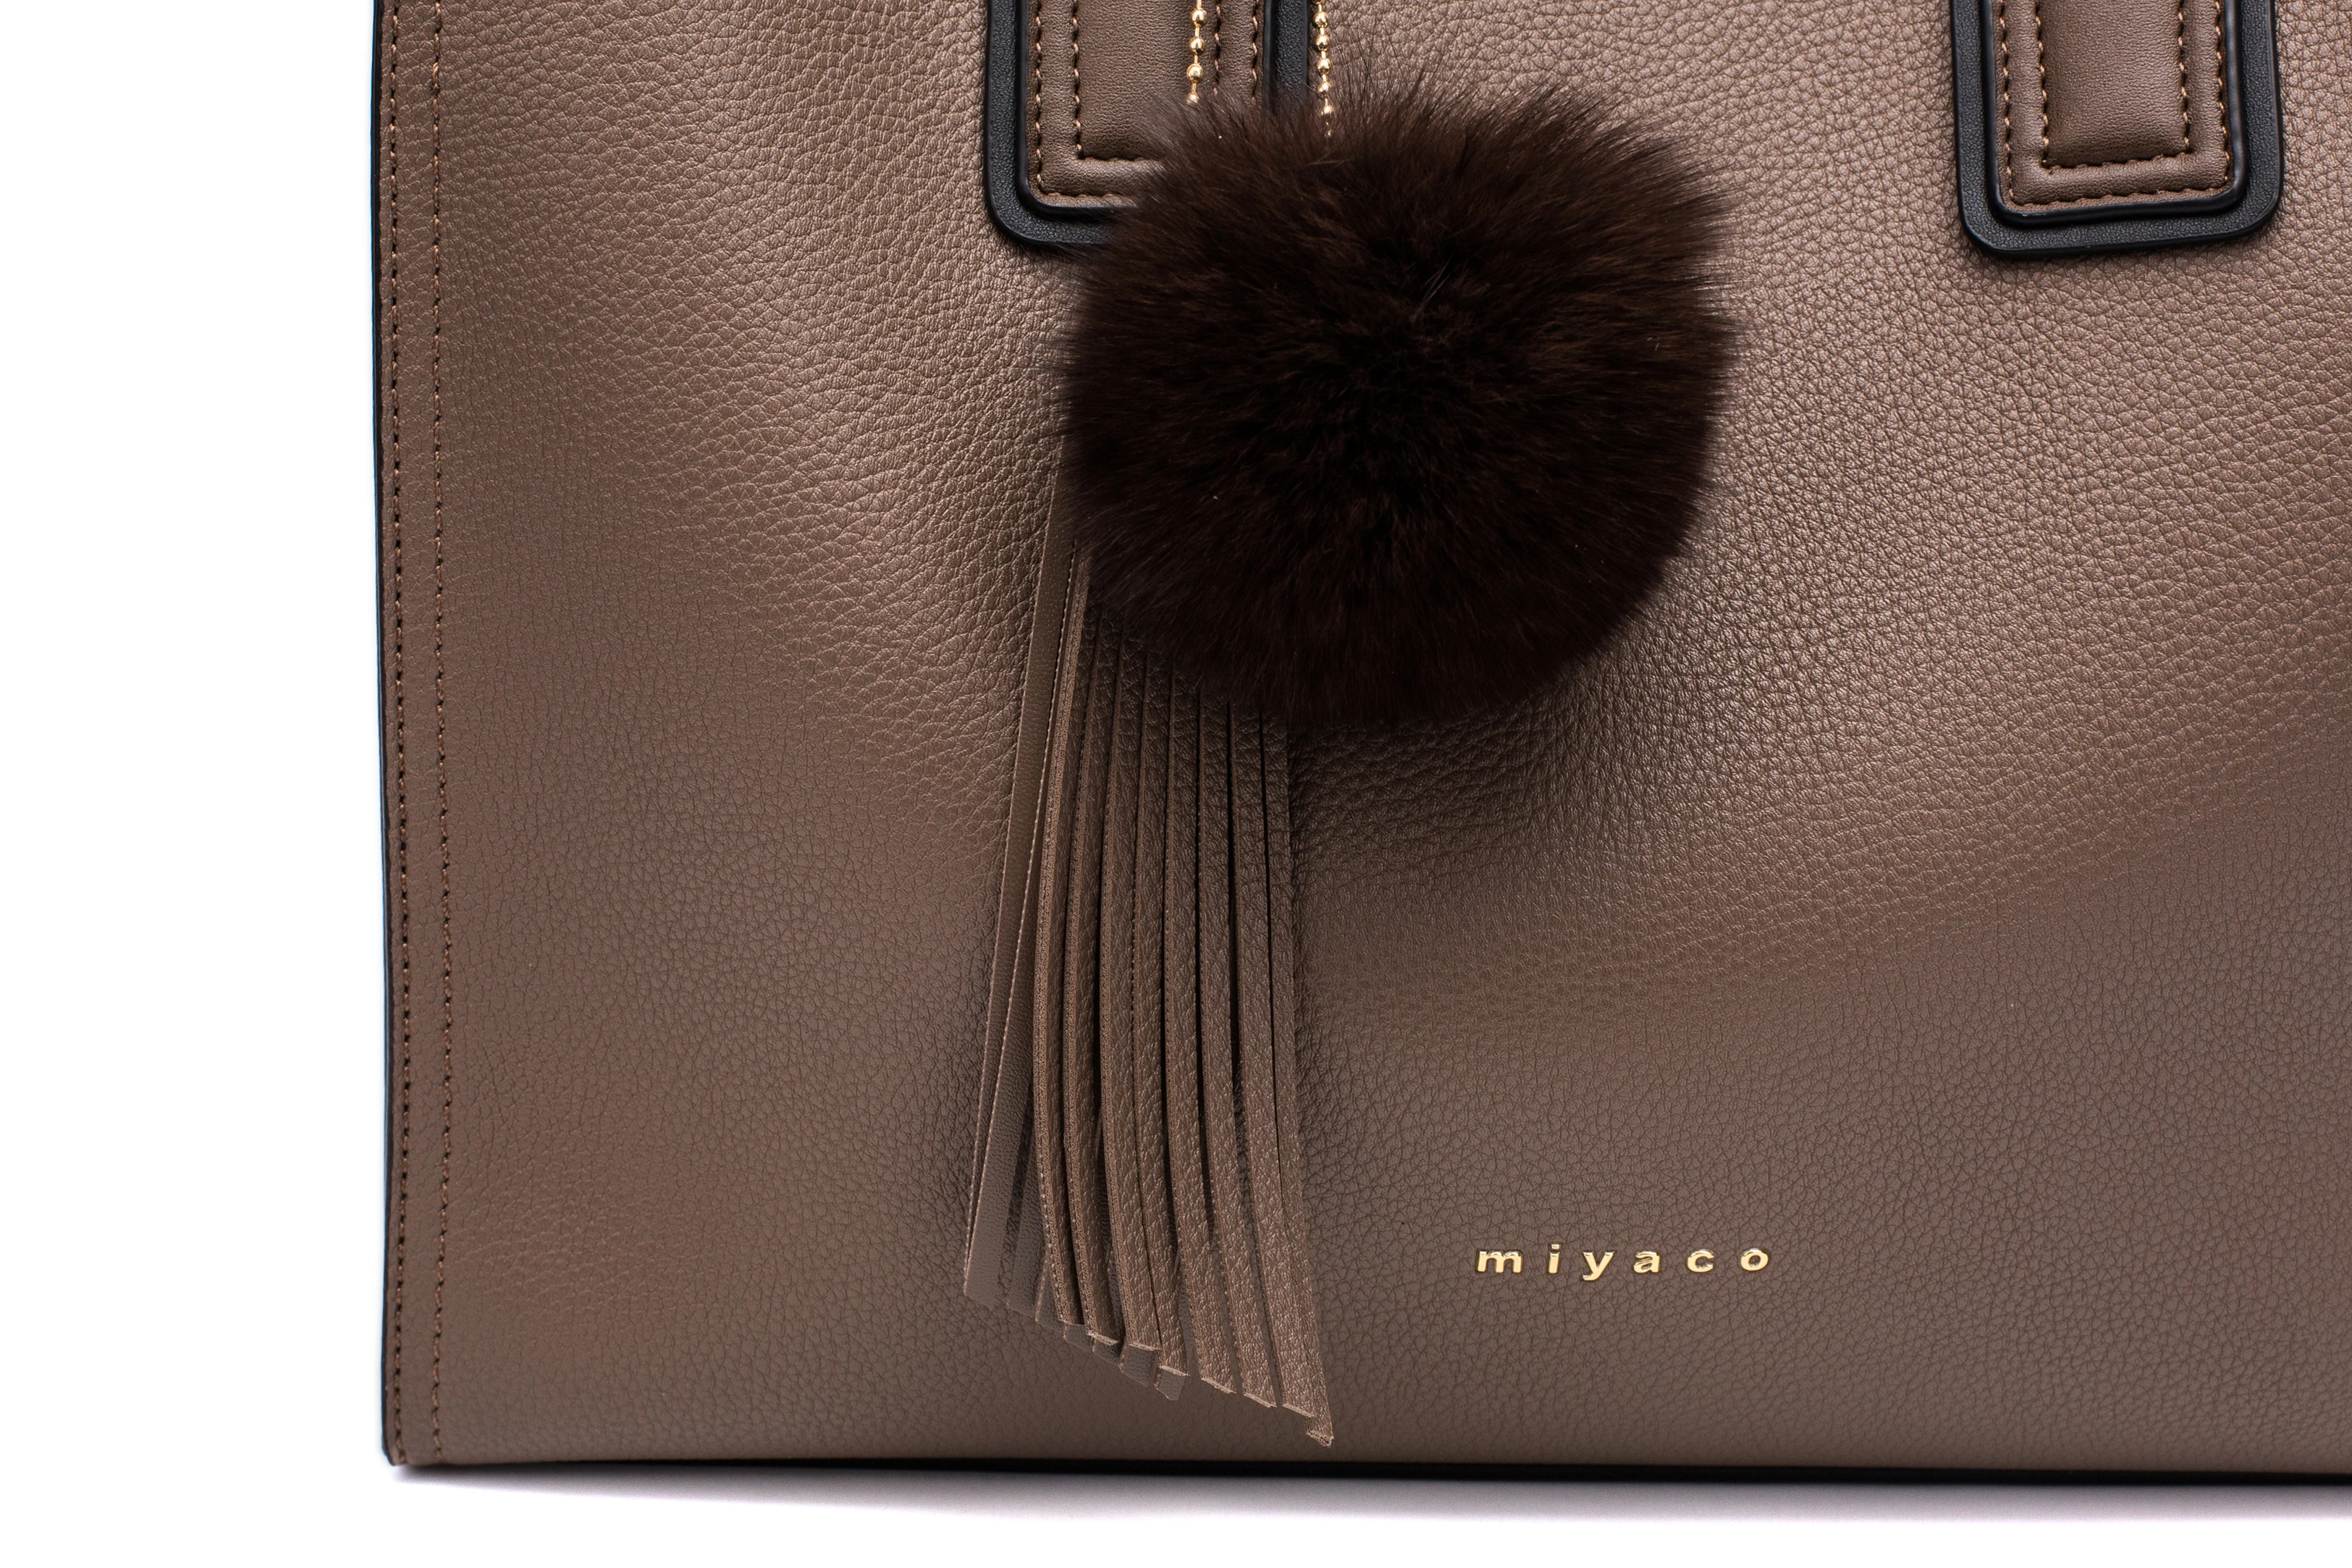 Miyaco Для женщин кожа Сумки Повседневное коричневые сумки Crossbody сумка Топ-ручка мешок с кисточкой и пушистый комочек